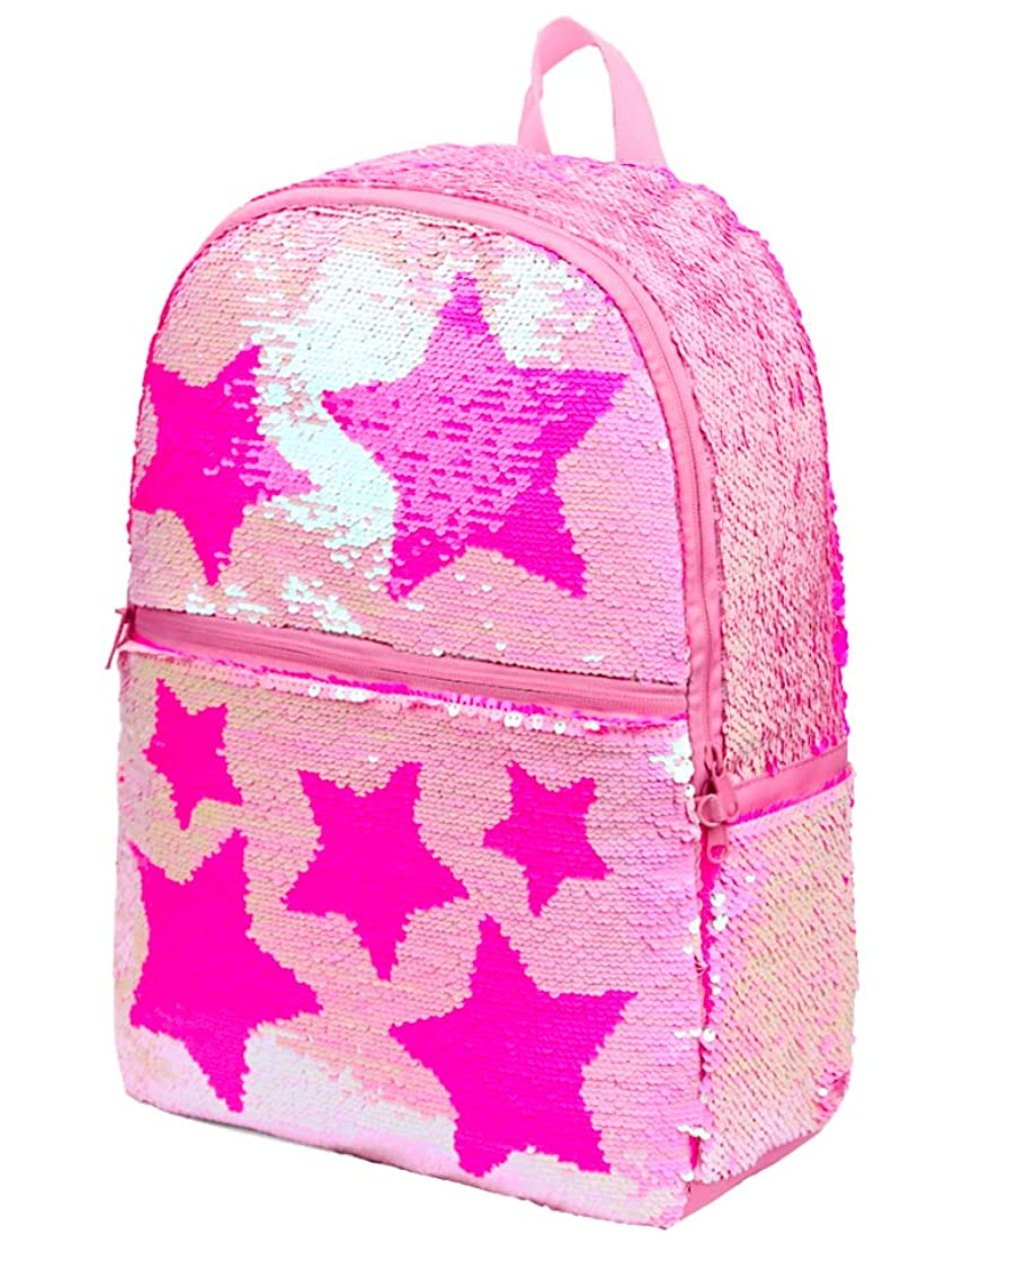 Dinosaur Animal Boys Backpack Back to School Lunch Pen Bags Girls Rucksack Set